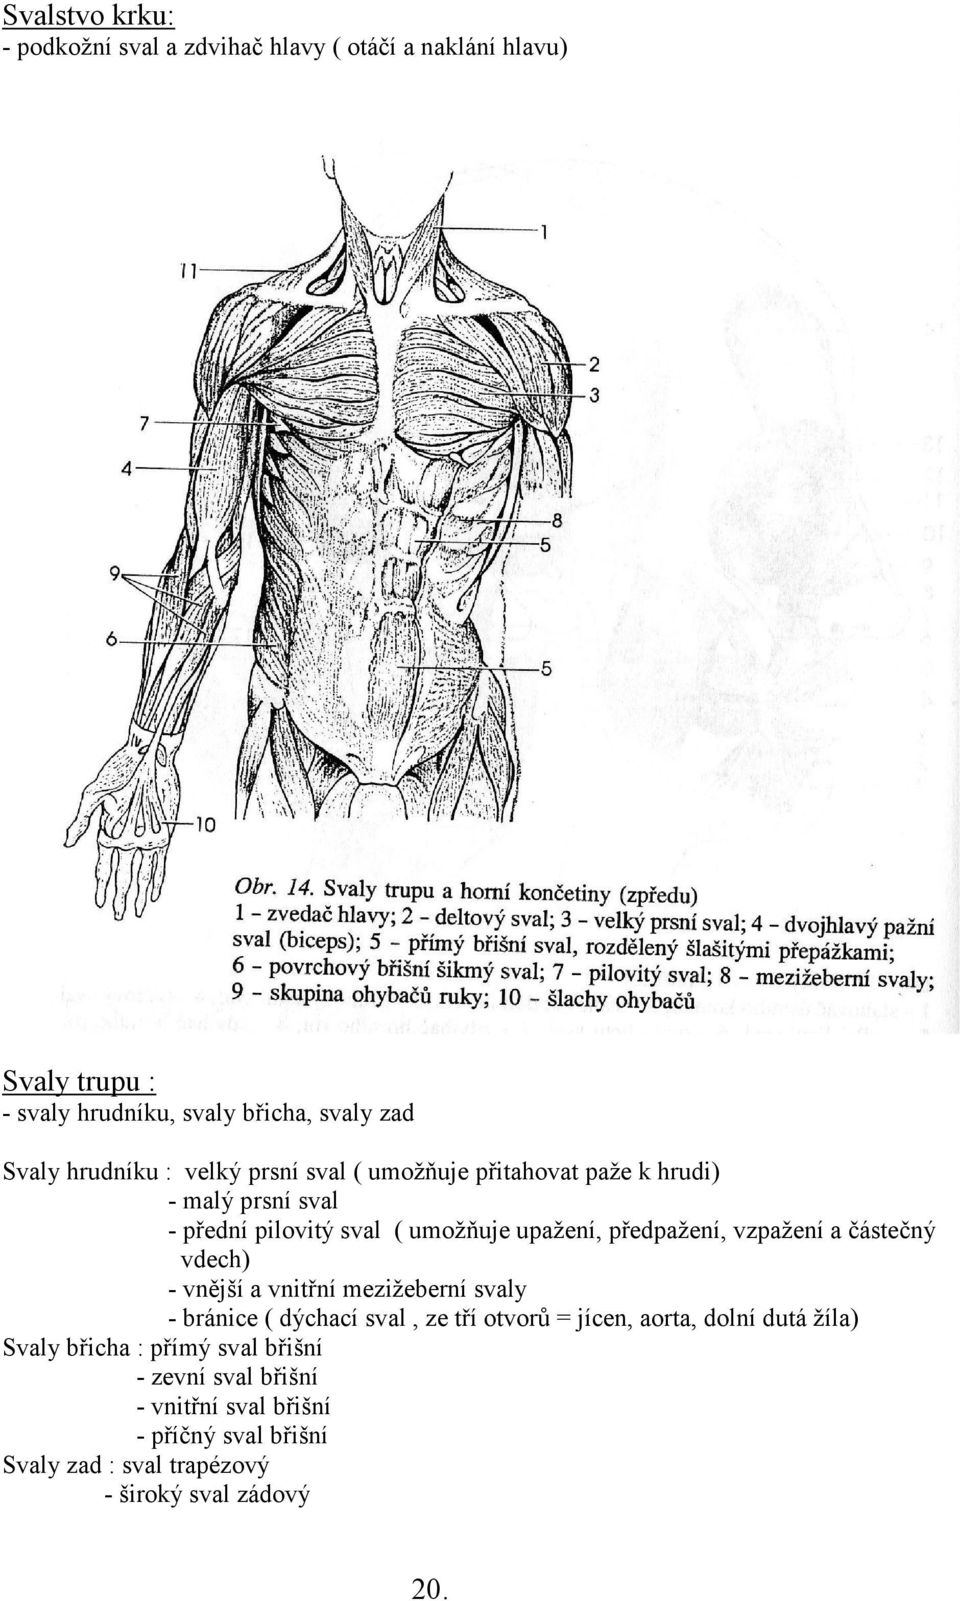 vzpažení a částečný vdech) - vnější a vnitřní mezižeberní svaly - bránice ( dýchací sval, ze tří otvorů = jícen, aorta, dolní dutá žíla)